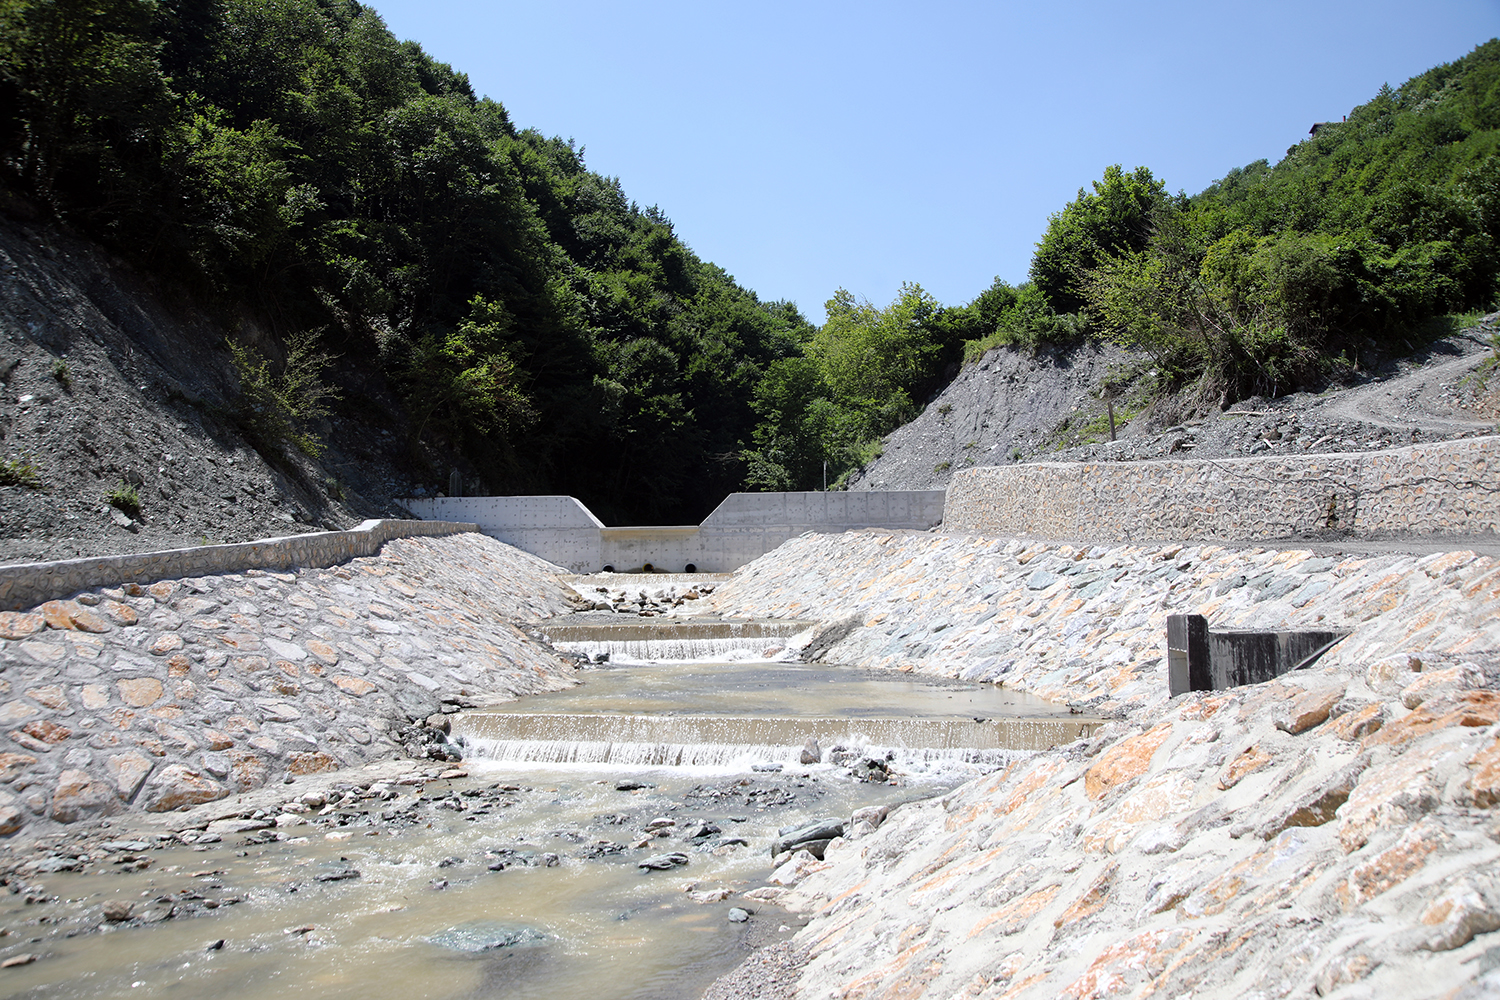 Her yönüyle ilklerin projesi Akçay Barajı